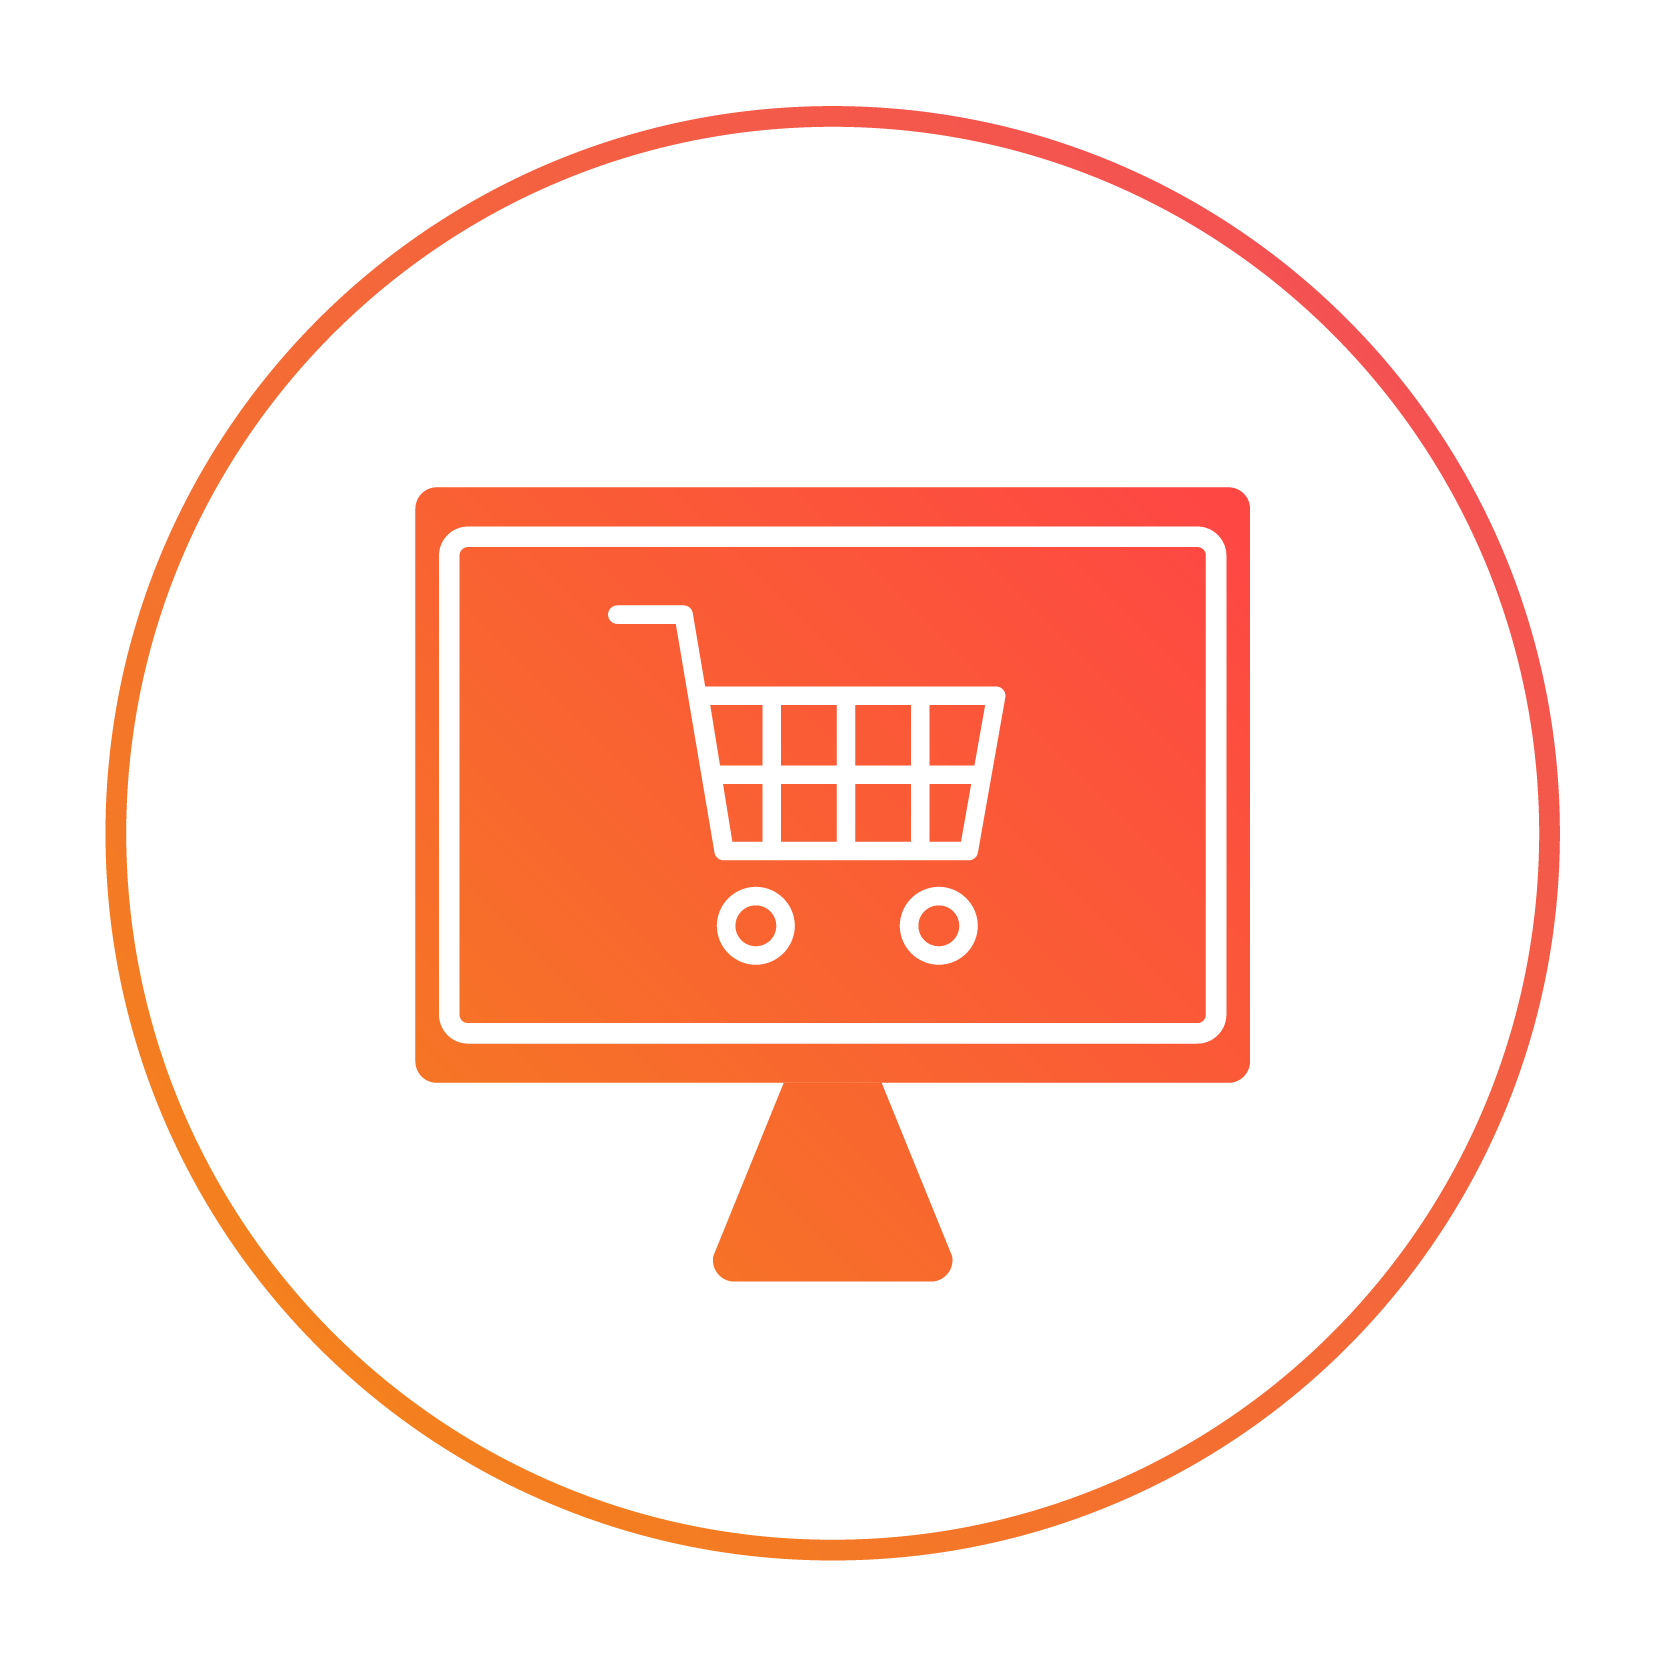 site-ecommerce